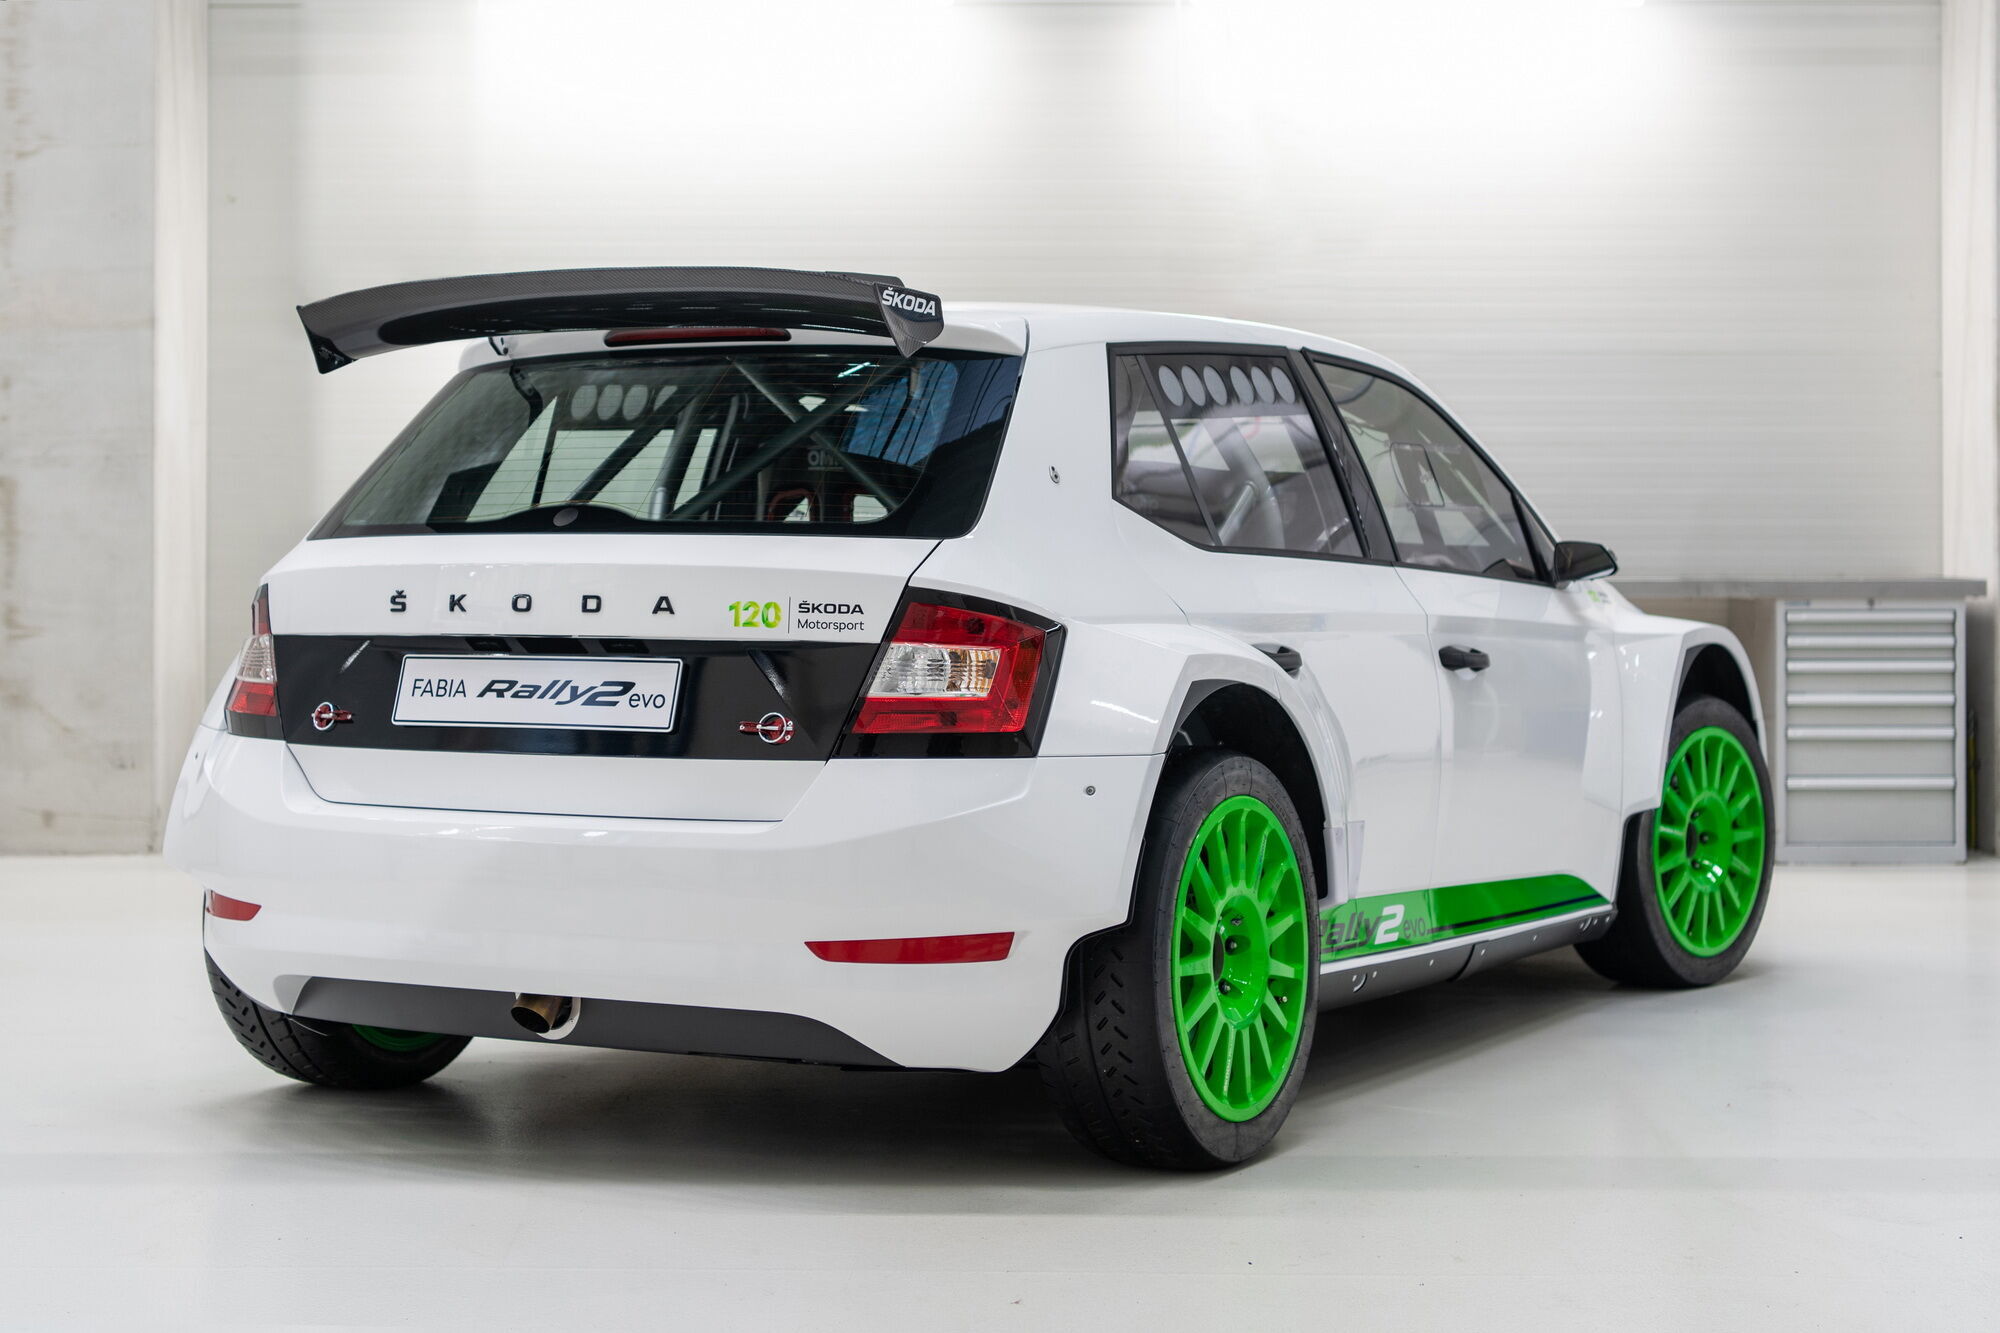 Подразделение Skoda Motorsport изготовит всего 12 экземпляров модели Fabia Rally2 Evo Edition 120 Rally Car